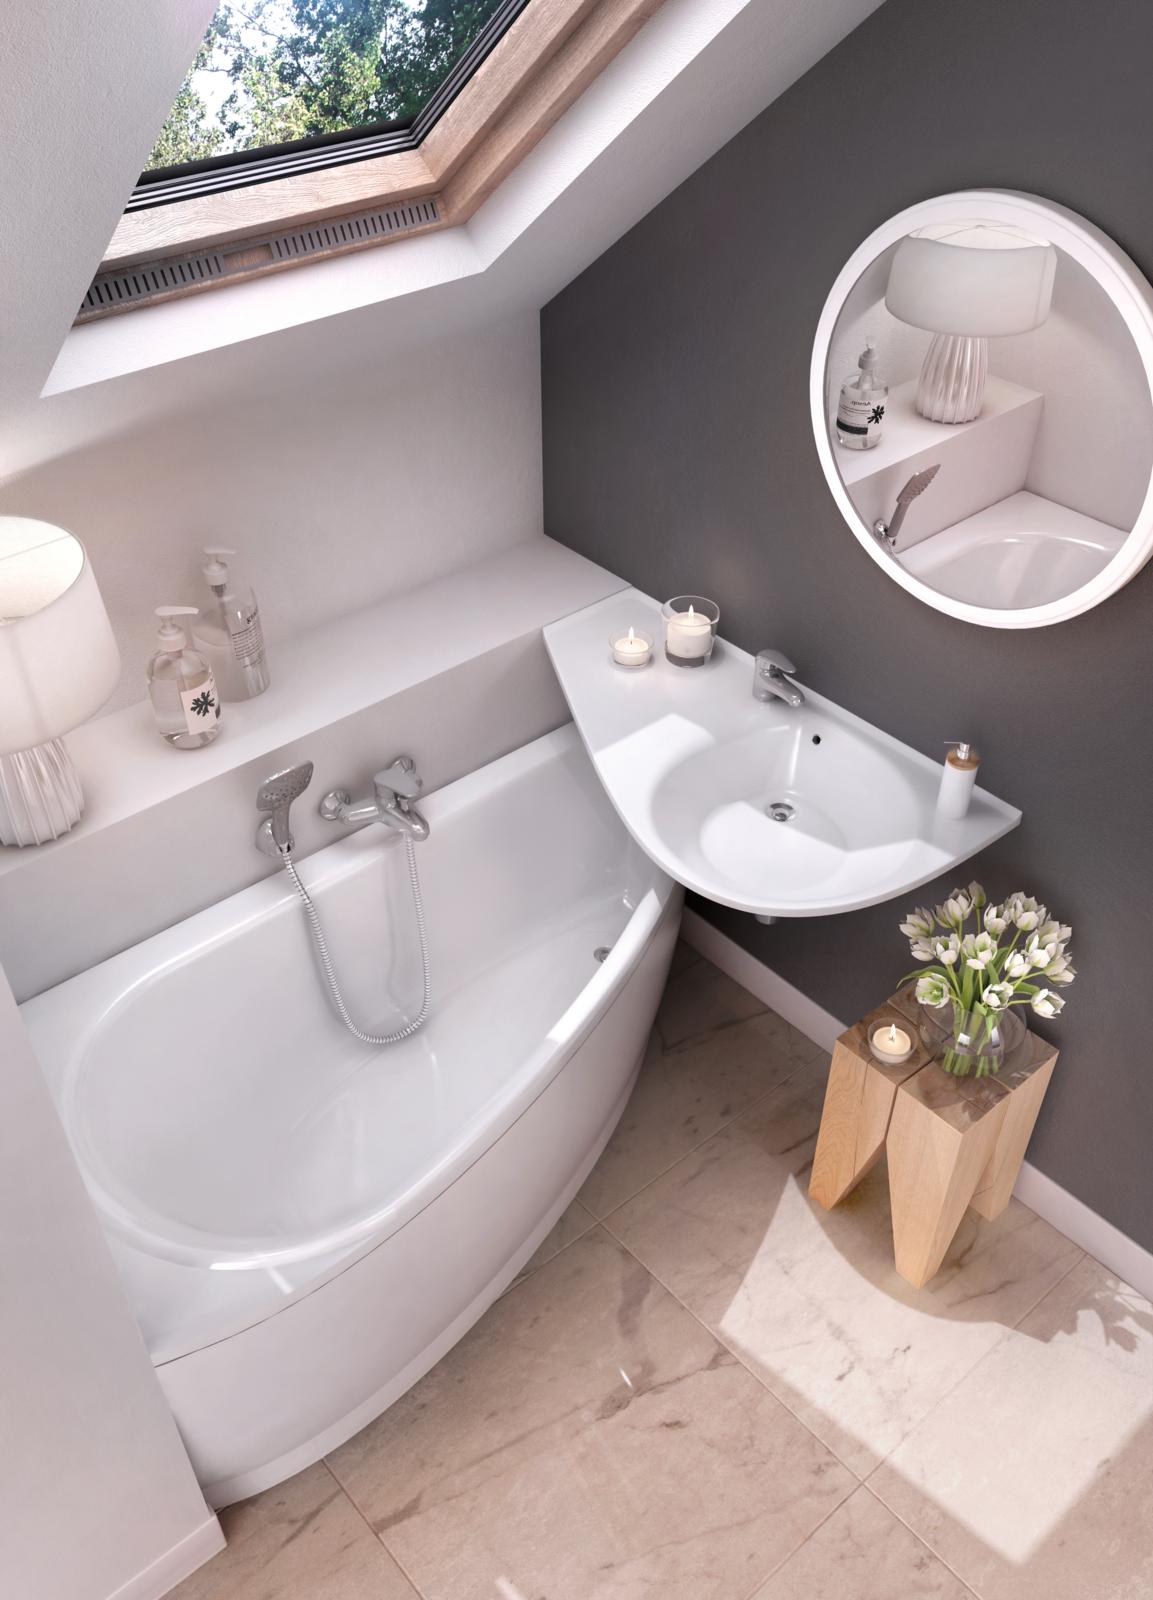 Az Avocado fürdőszoba koncepció egyszerre elegáns és vagány kádat és mosdót kínál a kis fürdőszobával rendelkezőknek.